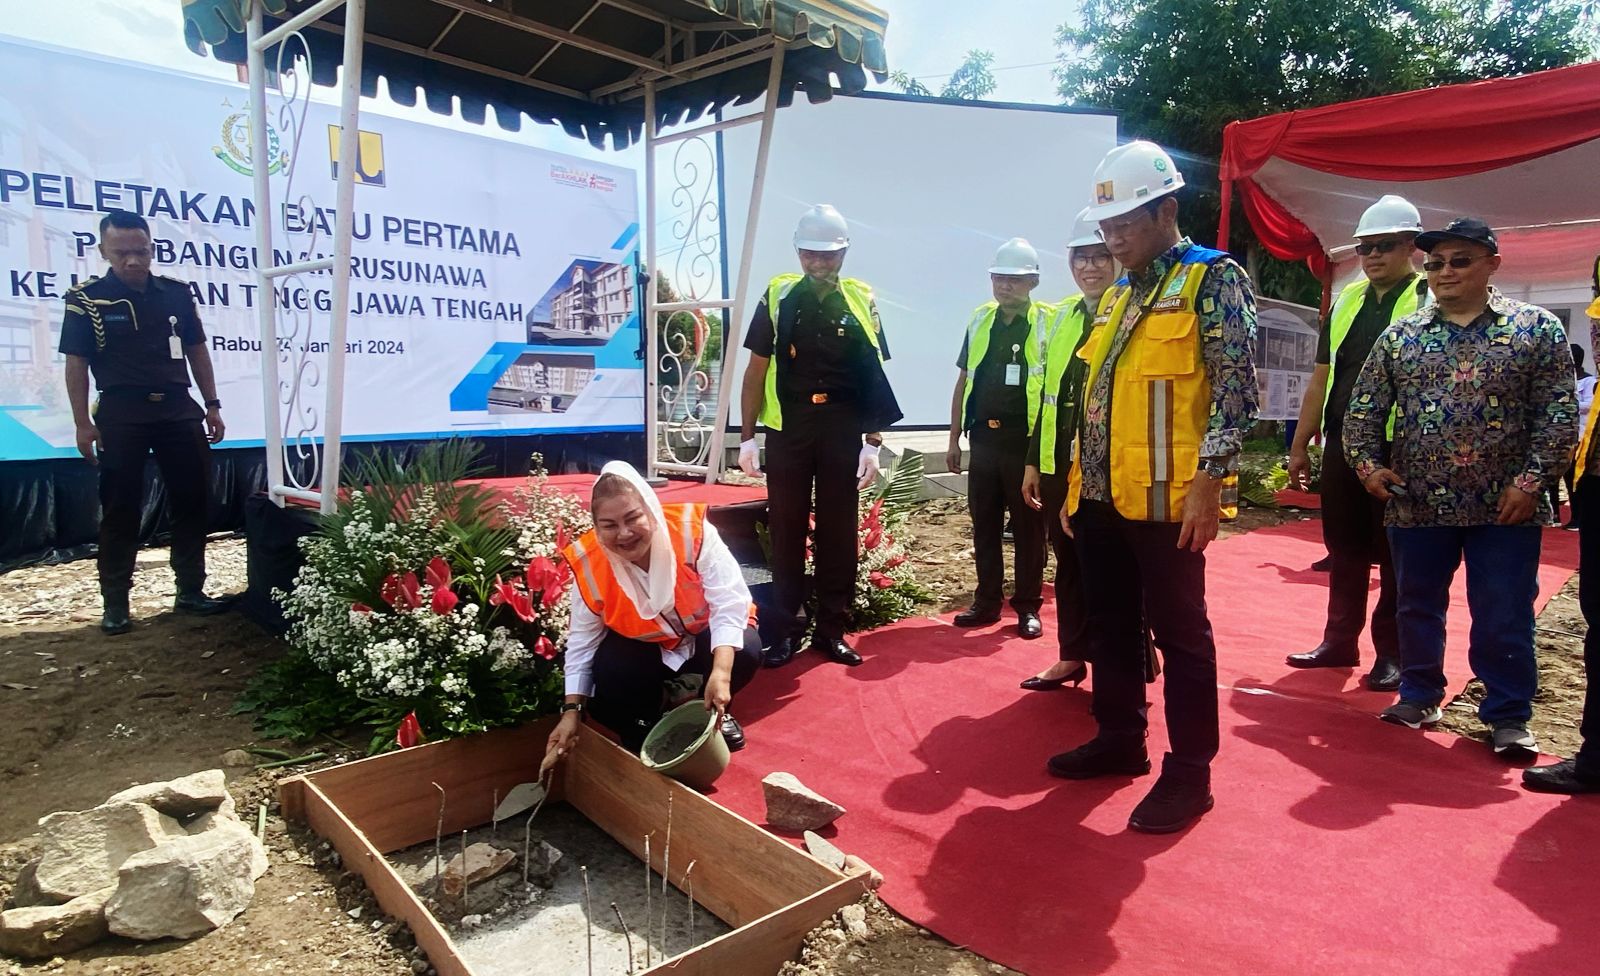 Hadir di Pembangunan Rusun Kejati Jateng, Ini Komitmen Wali Kota Semarang